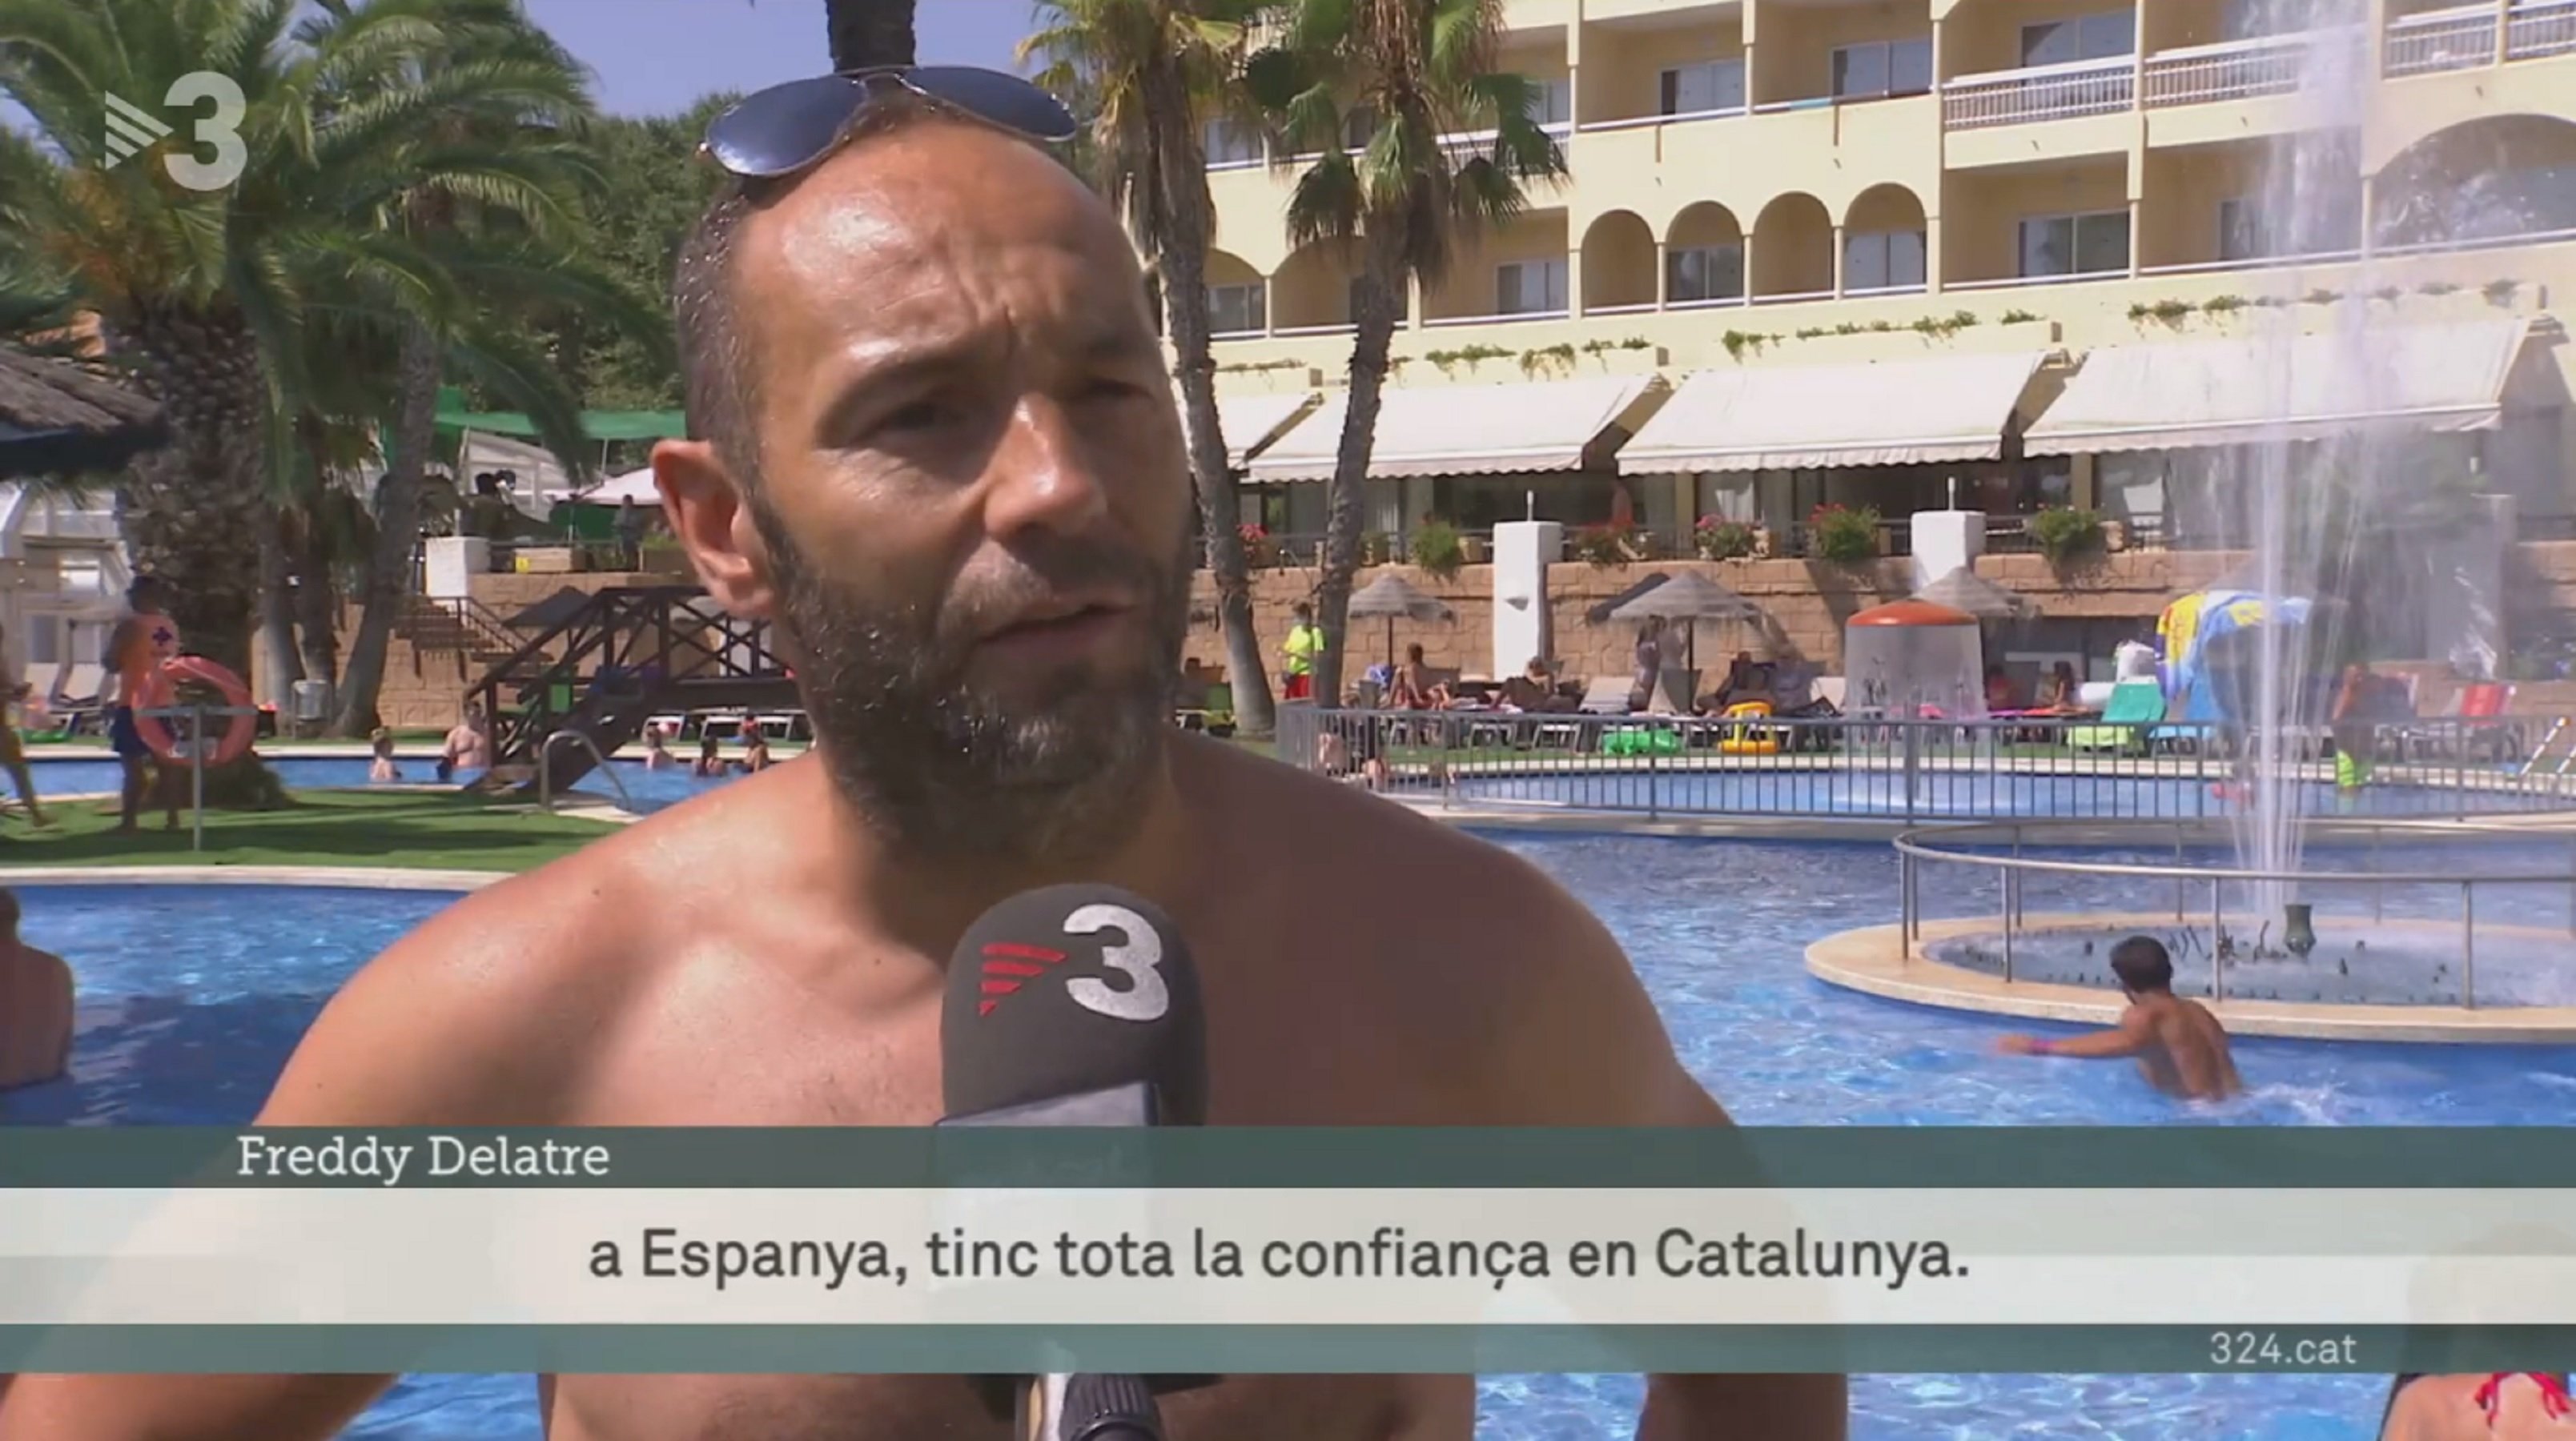 Momentazo en el TN: un turista confía "en la República Catalana", TV3 lo esconde